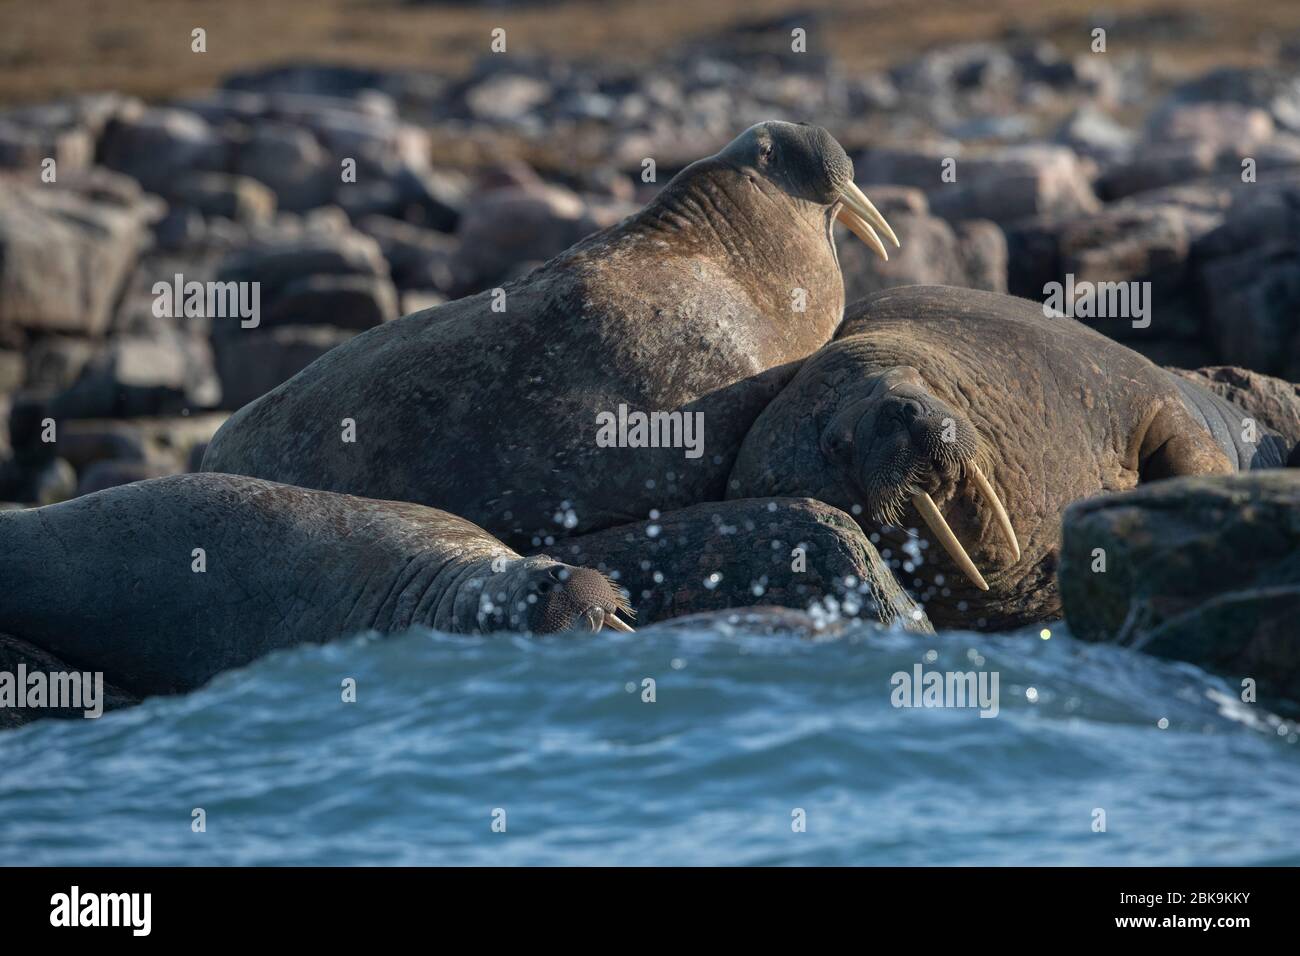 Walrus asleep on rocks, Canada Stock Photo